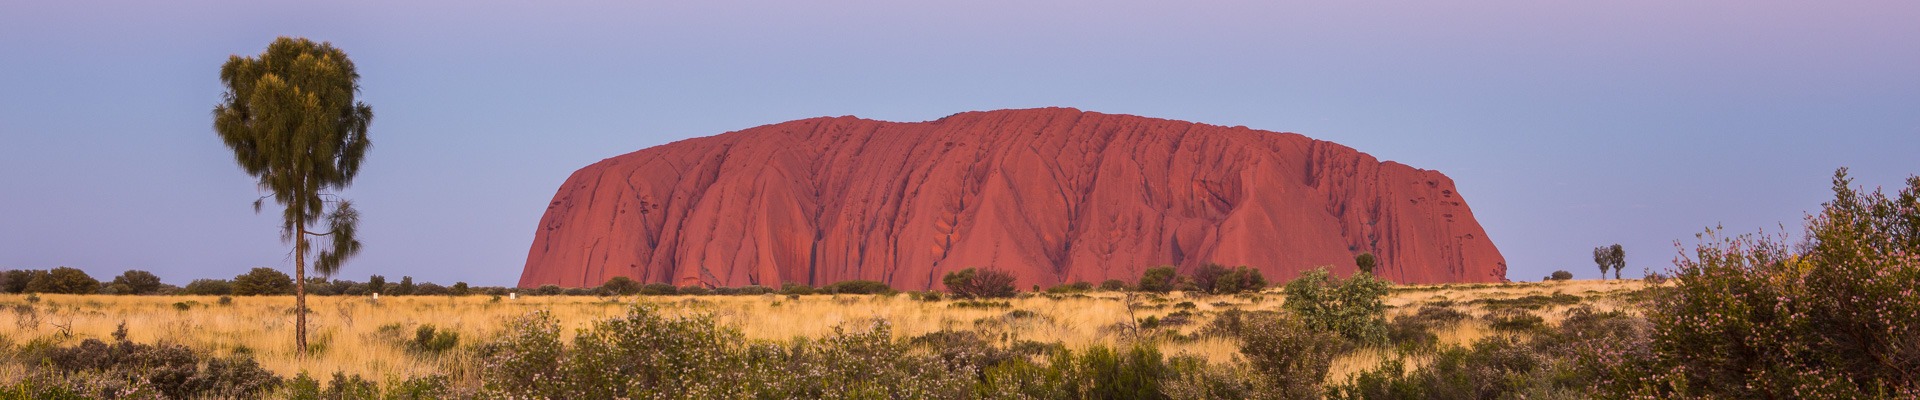 landscape photograph of Uluru in outback Australia